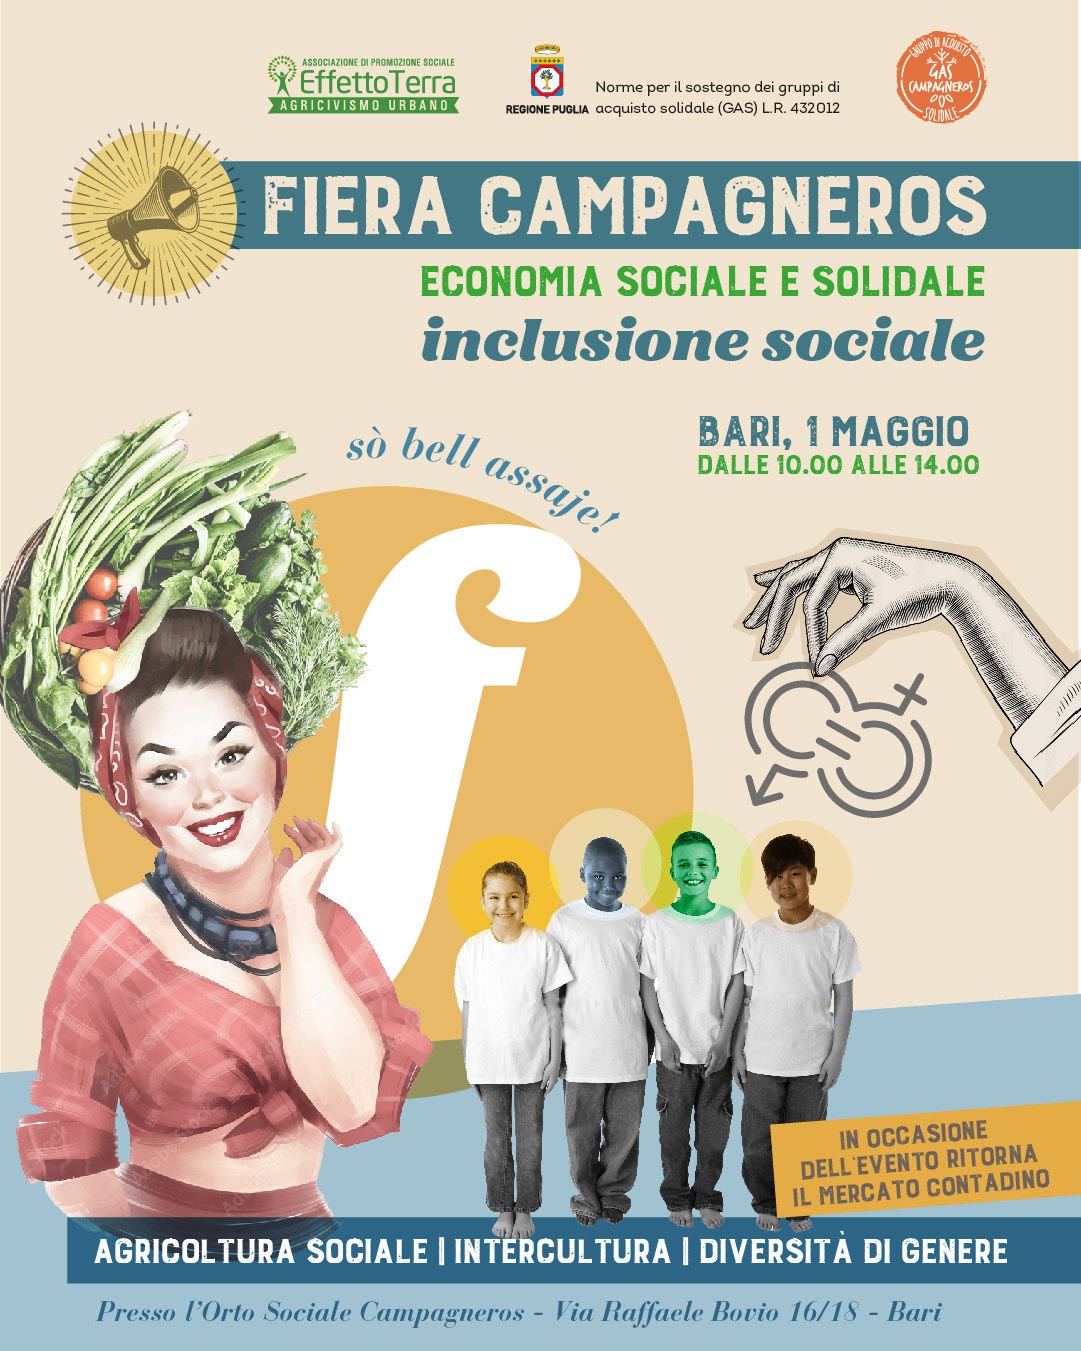 campagna social per FIERA-CAMPAGNEROS_donna anni 50 con frutta in testa, 4 bambini di etnie diverse e mano litografata con in mano i simboli di uomo e donna